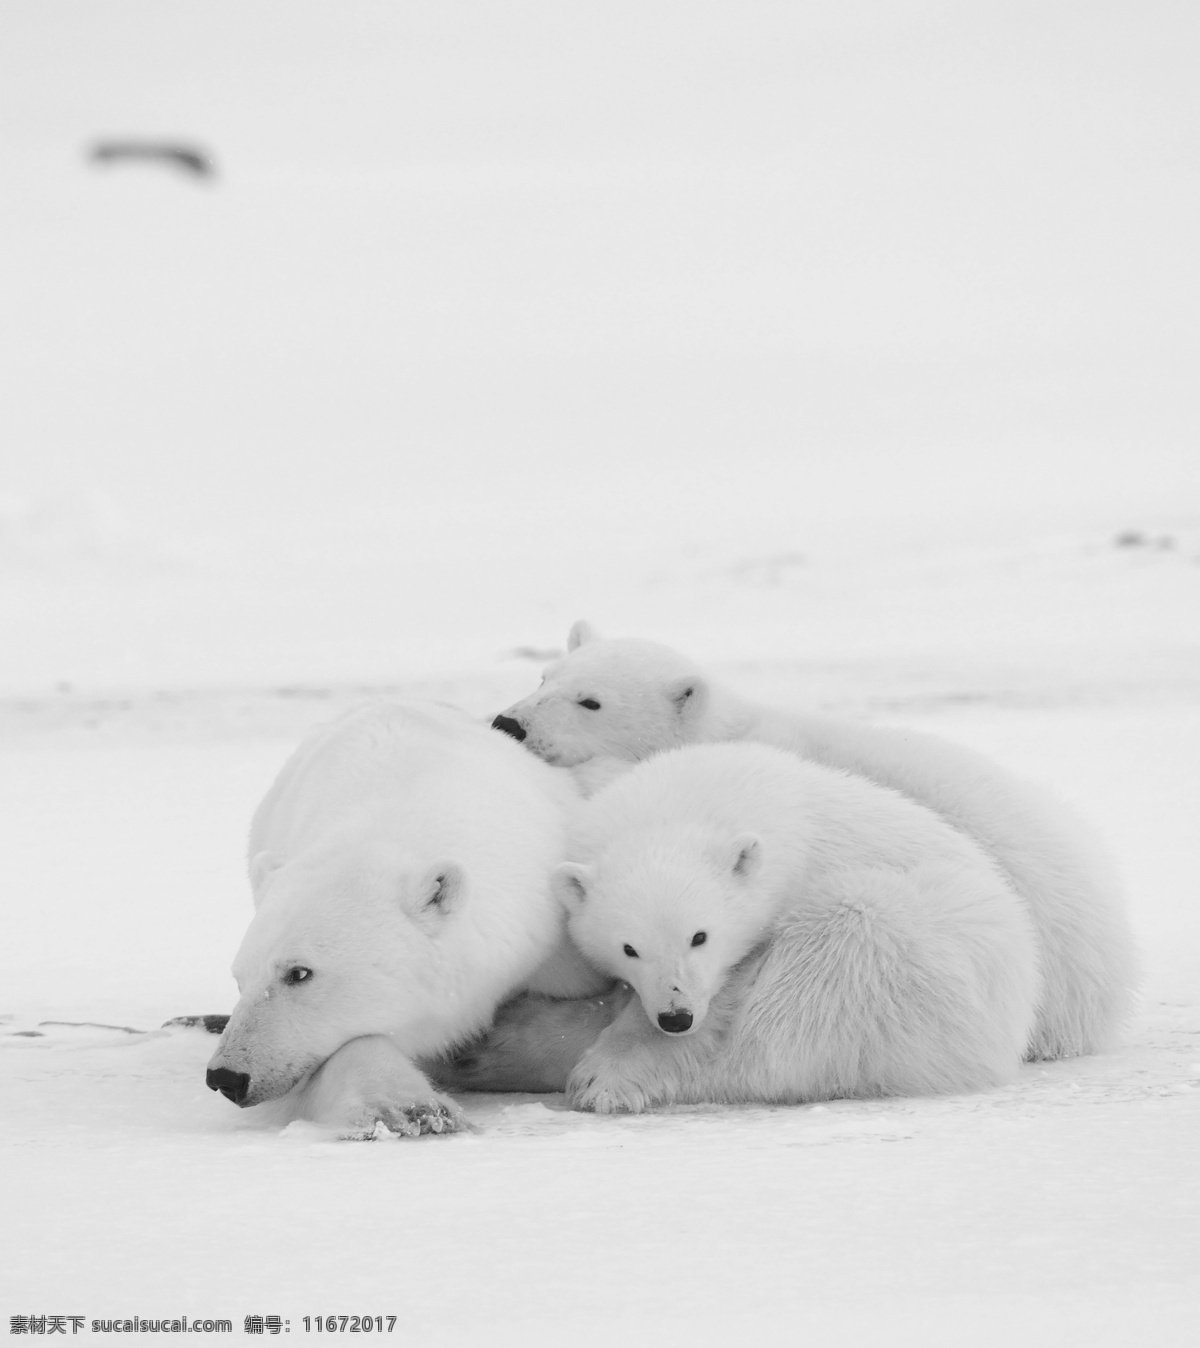 雪地 里 北极熊 熊 动物 野生动物 动物世界 陆地动物 动物摄影 生物世界